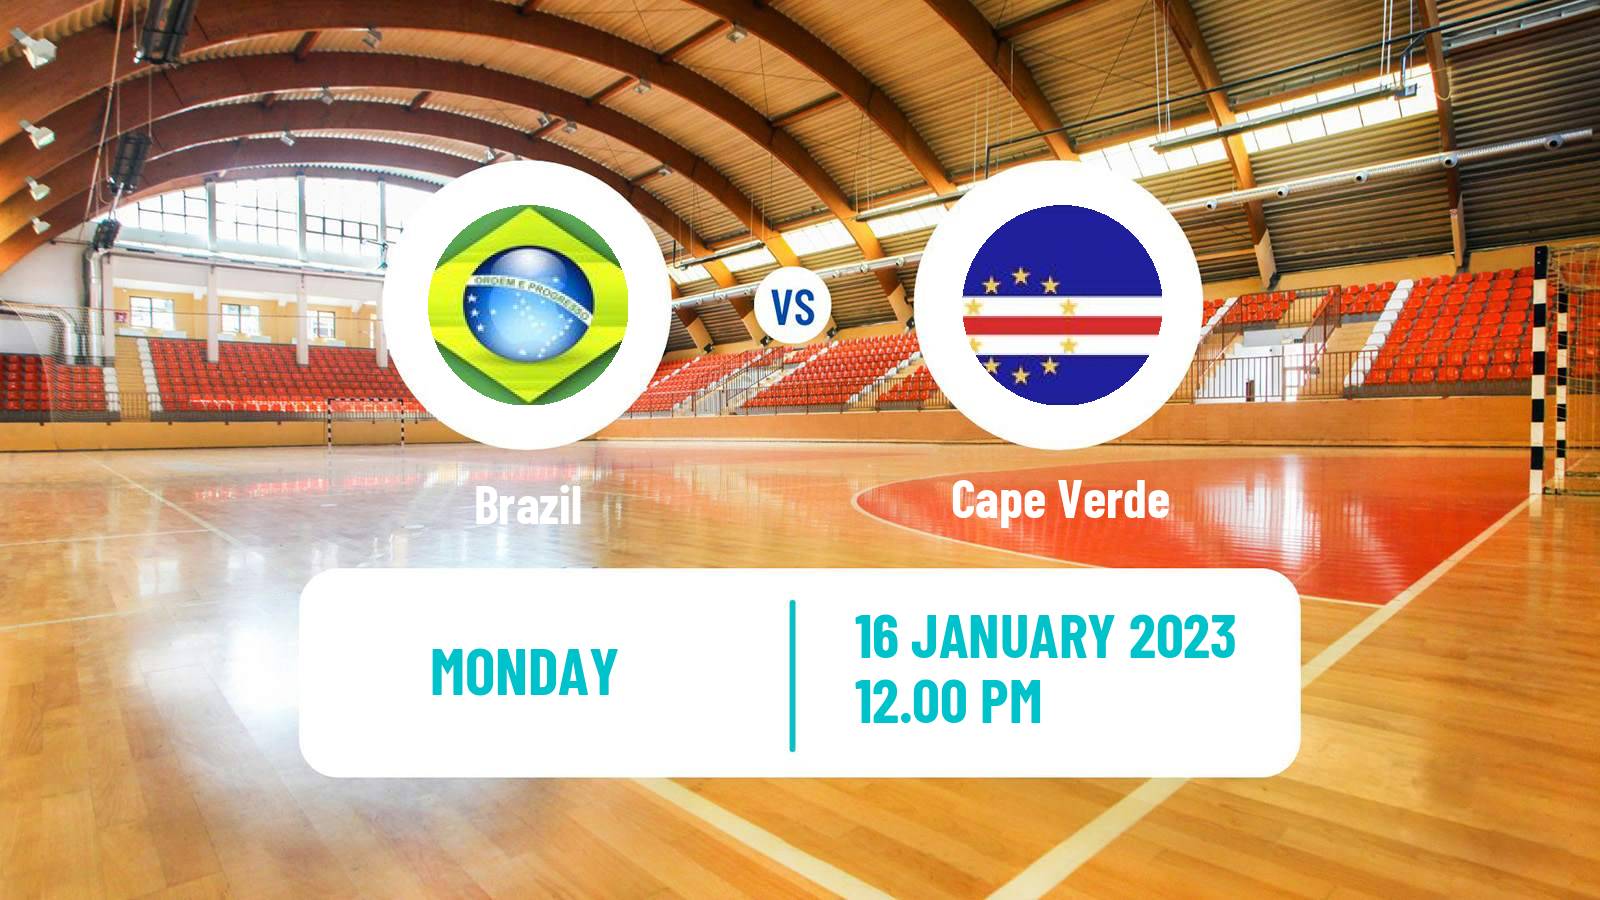 Handball Handball World Championship Brazil - Cape Verde